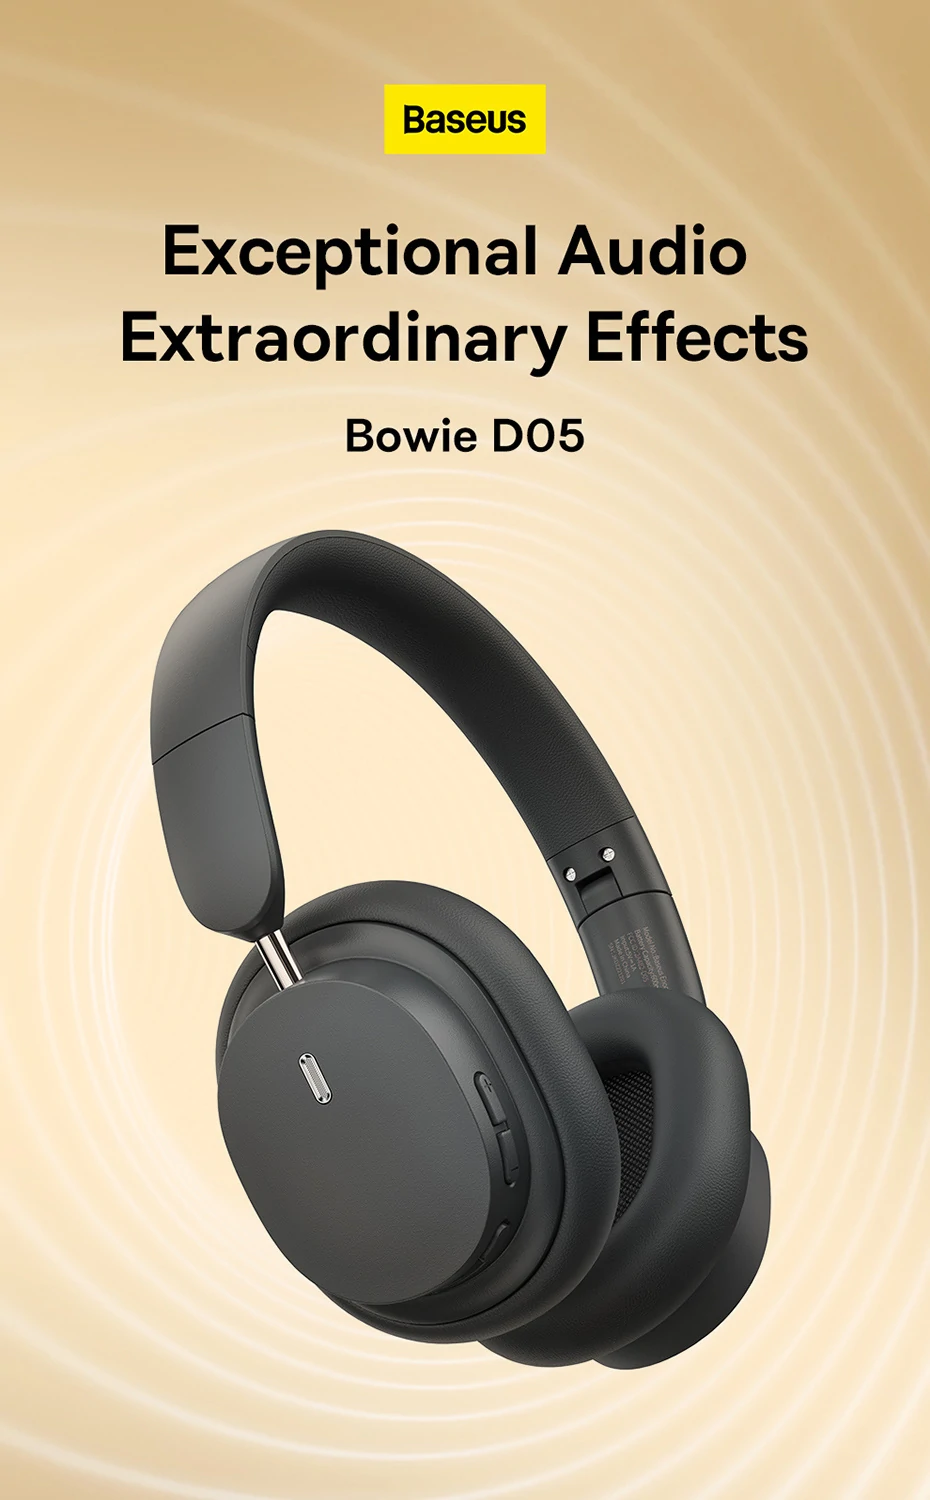 Baseus Bowie D05 Özel 3D özelliğine sahip Bluetooth kulaklık